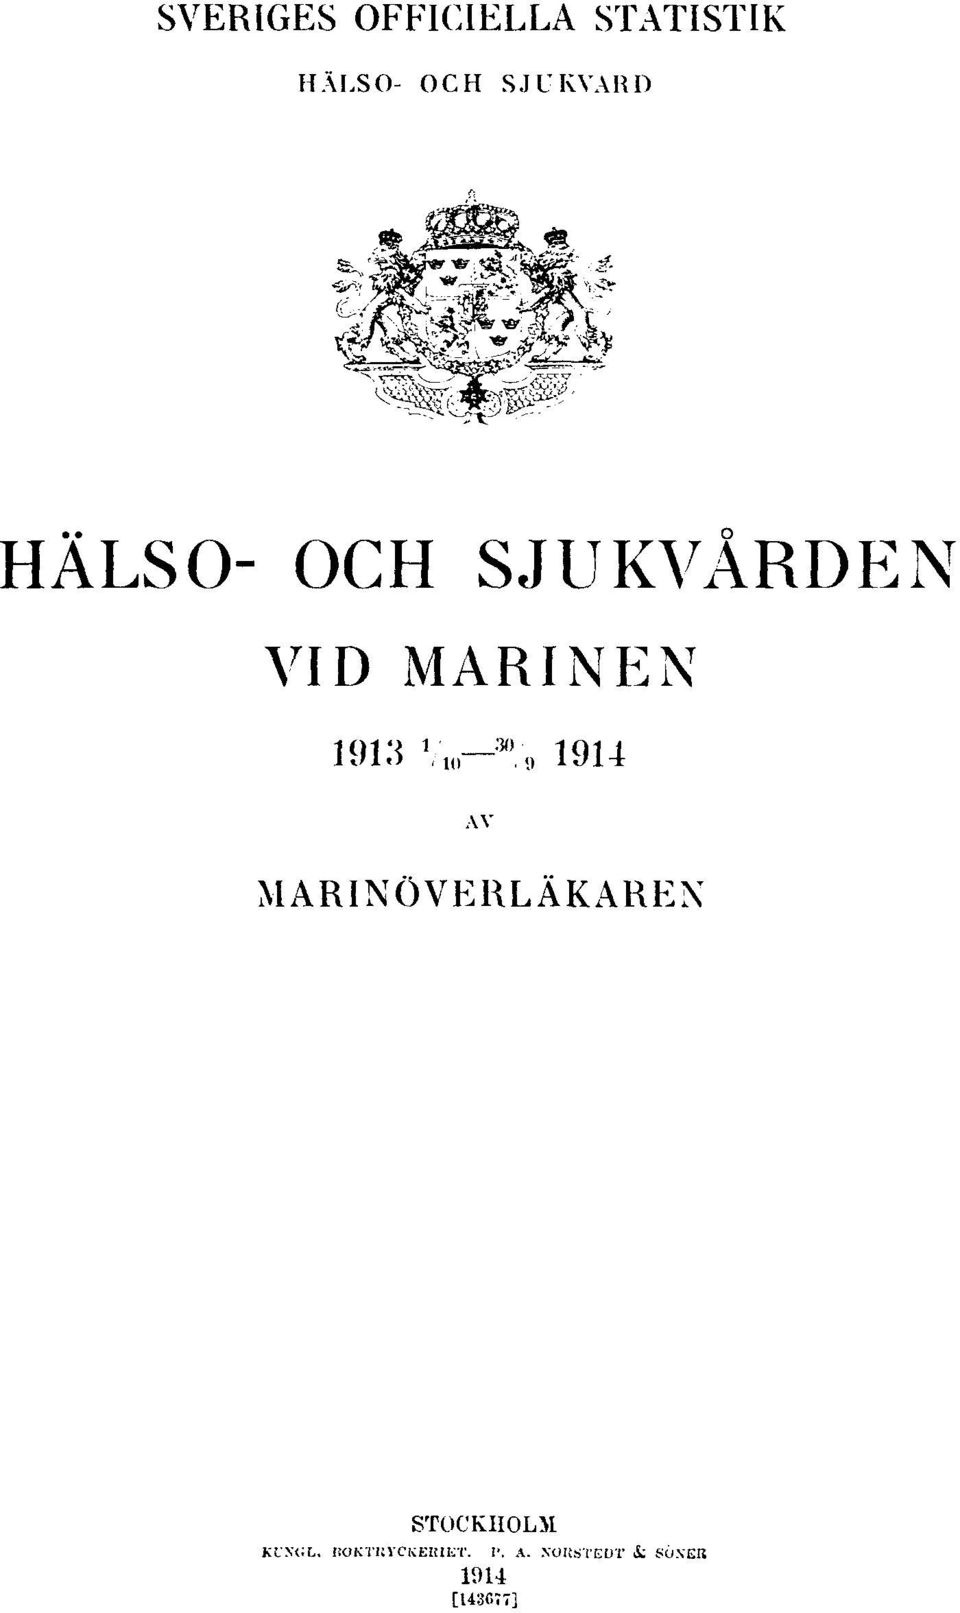 1 /10 30 /91914 AV MARINÖVERLÄKAREN STOCKHOLM